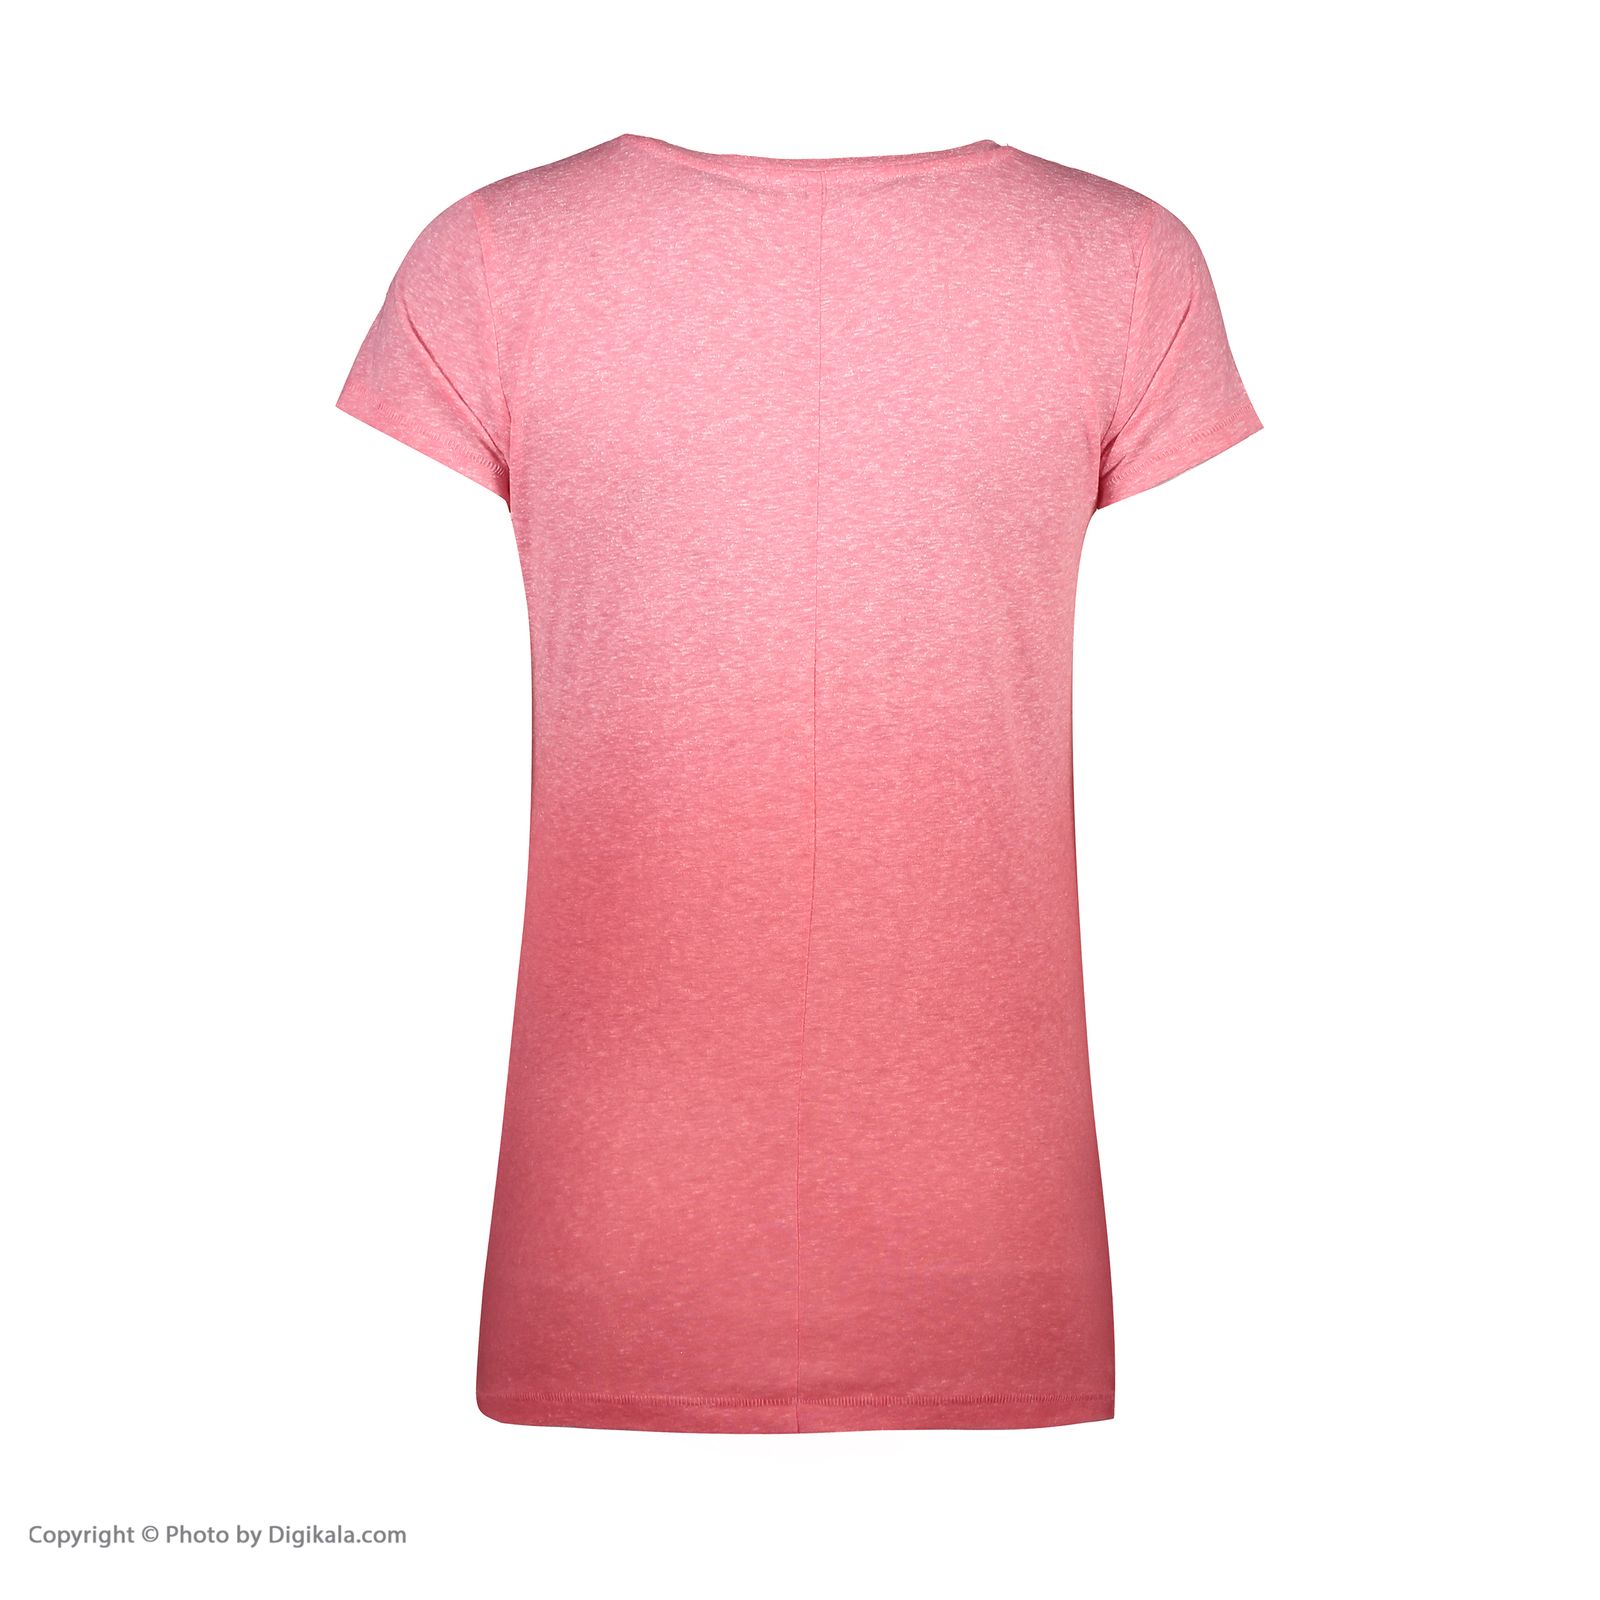 تی شرت زنانه کالینز مدل CL1031616-PINK MELANGE - صورتی - 4